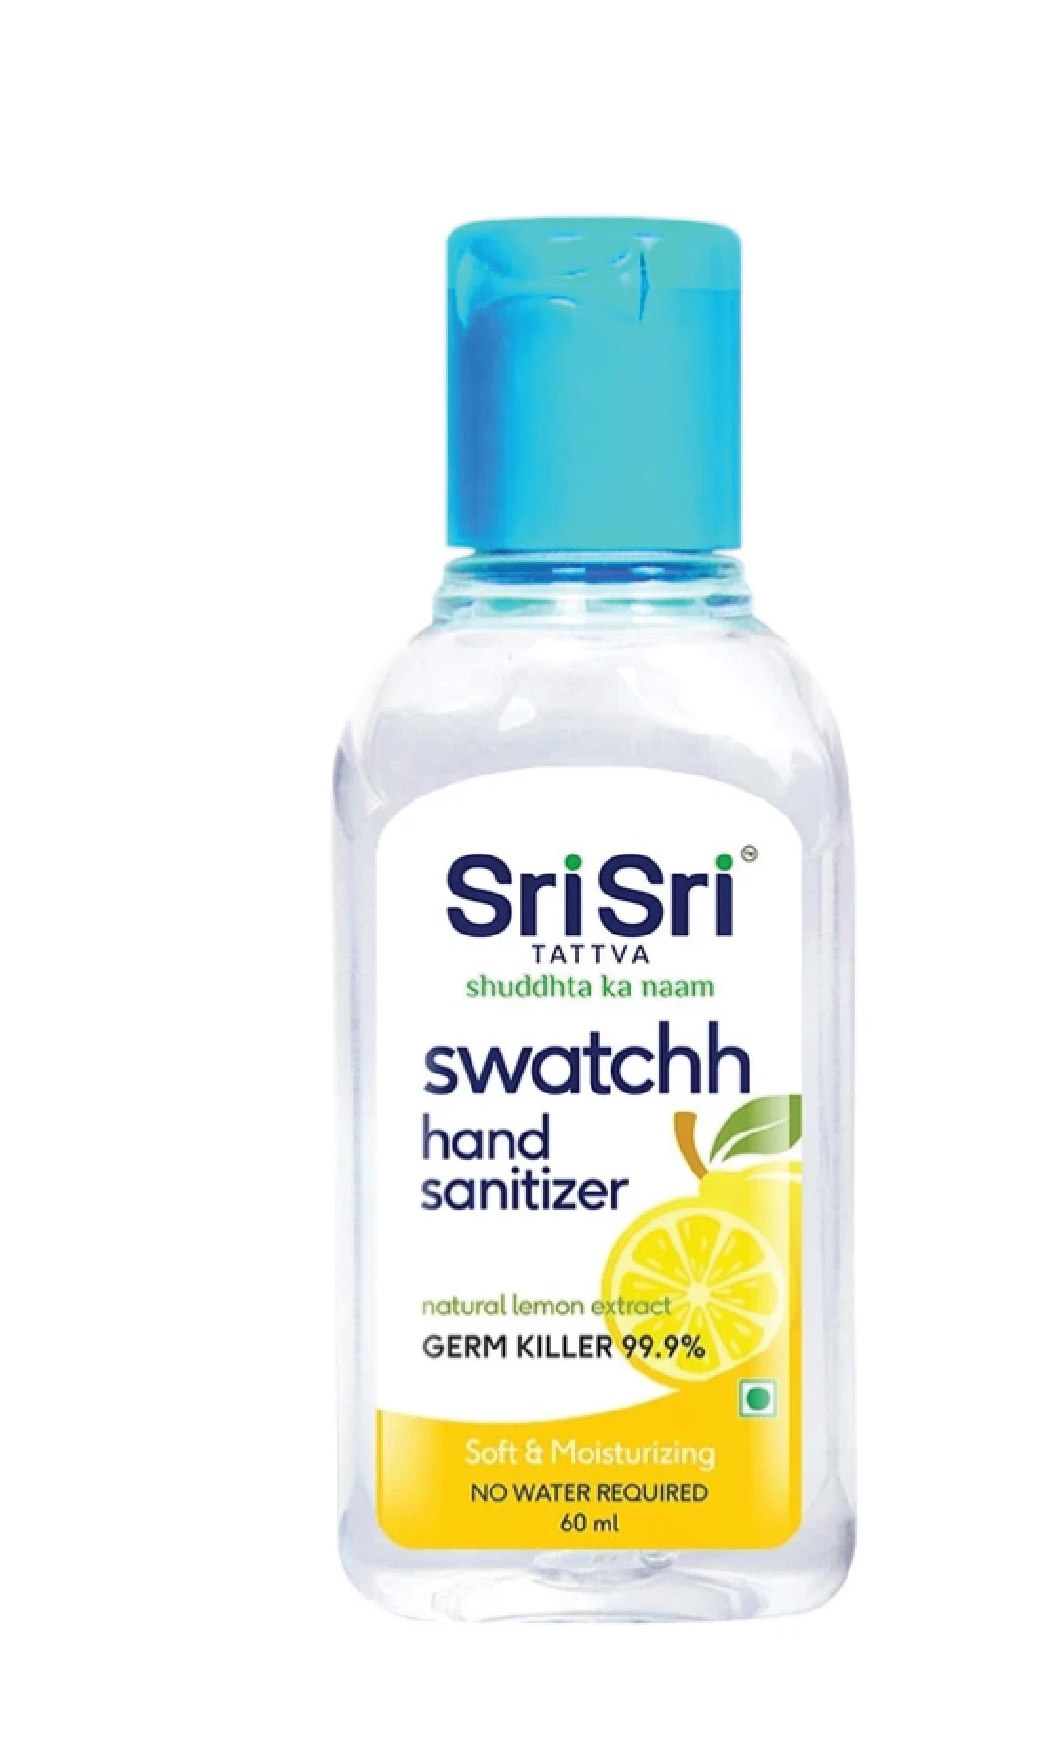 Sri Sri Tattva Hand Sanitizer